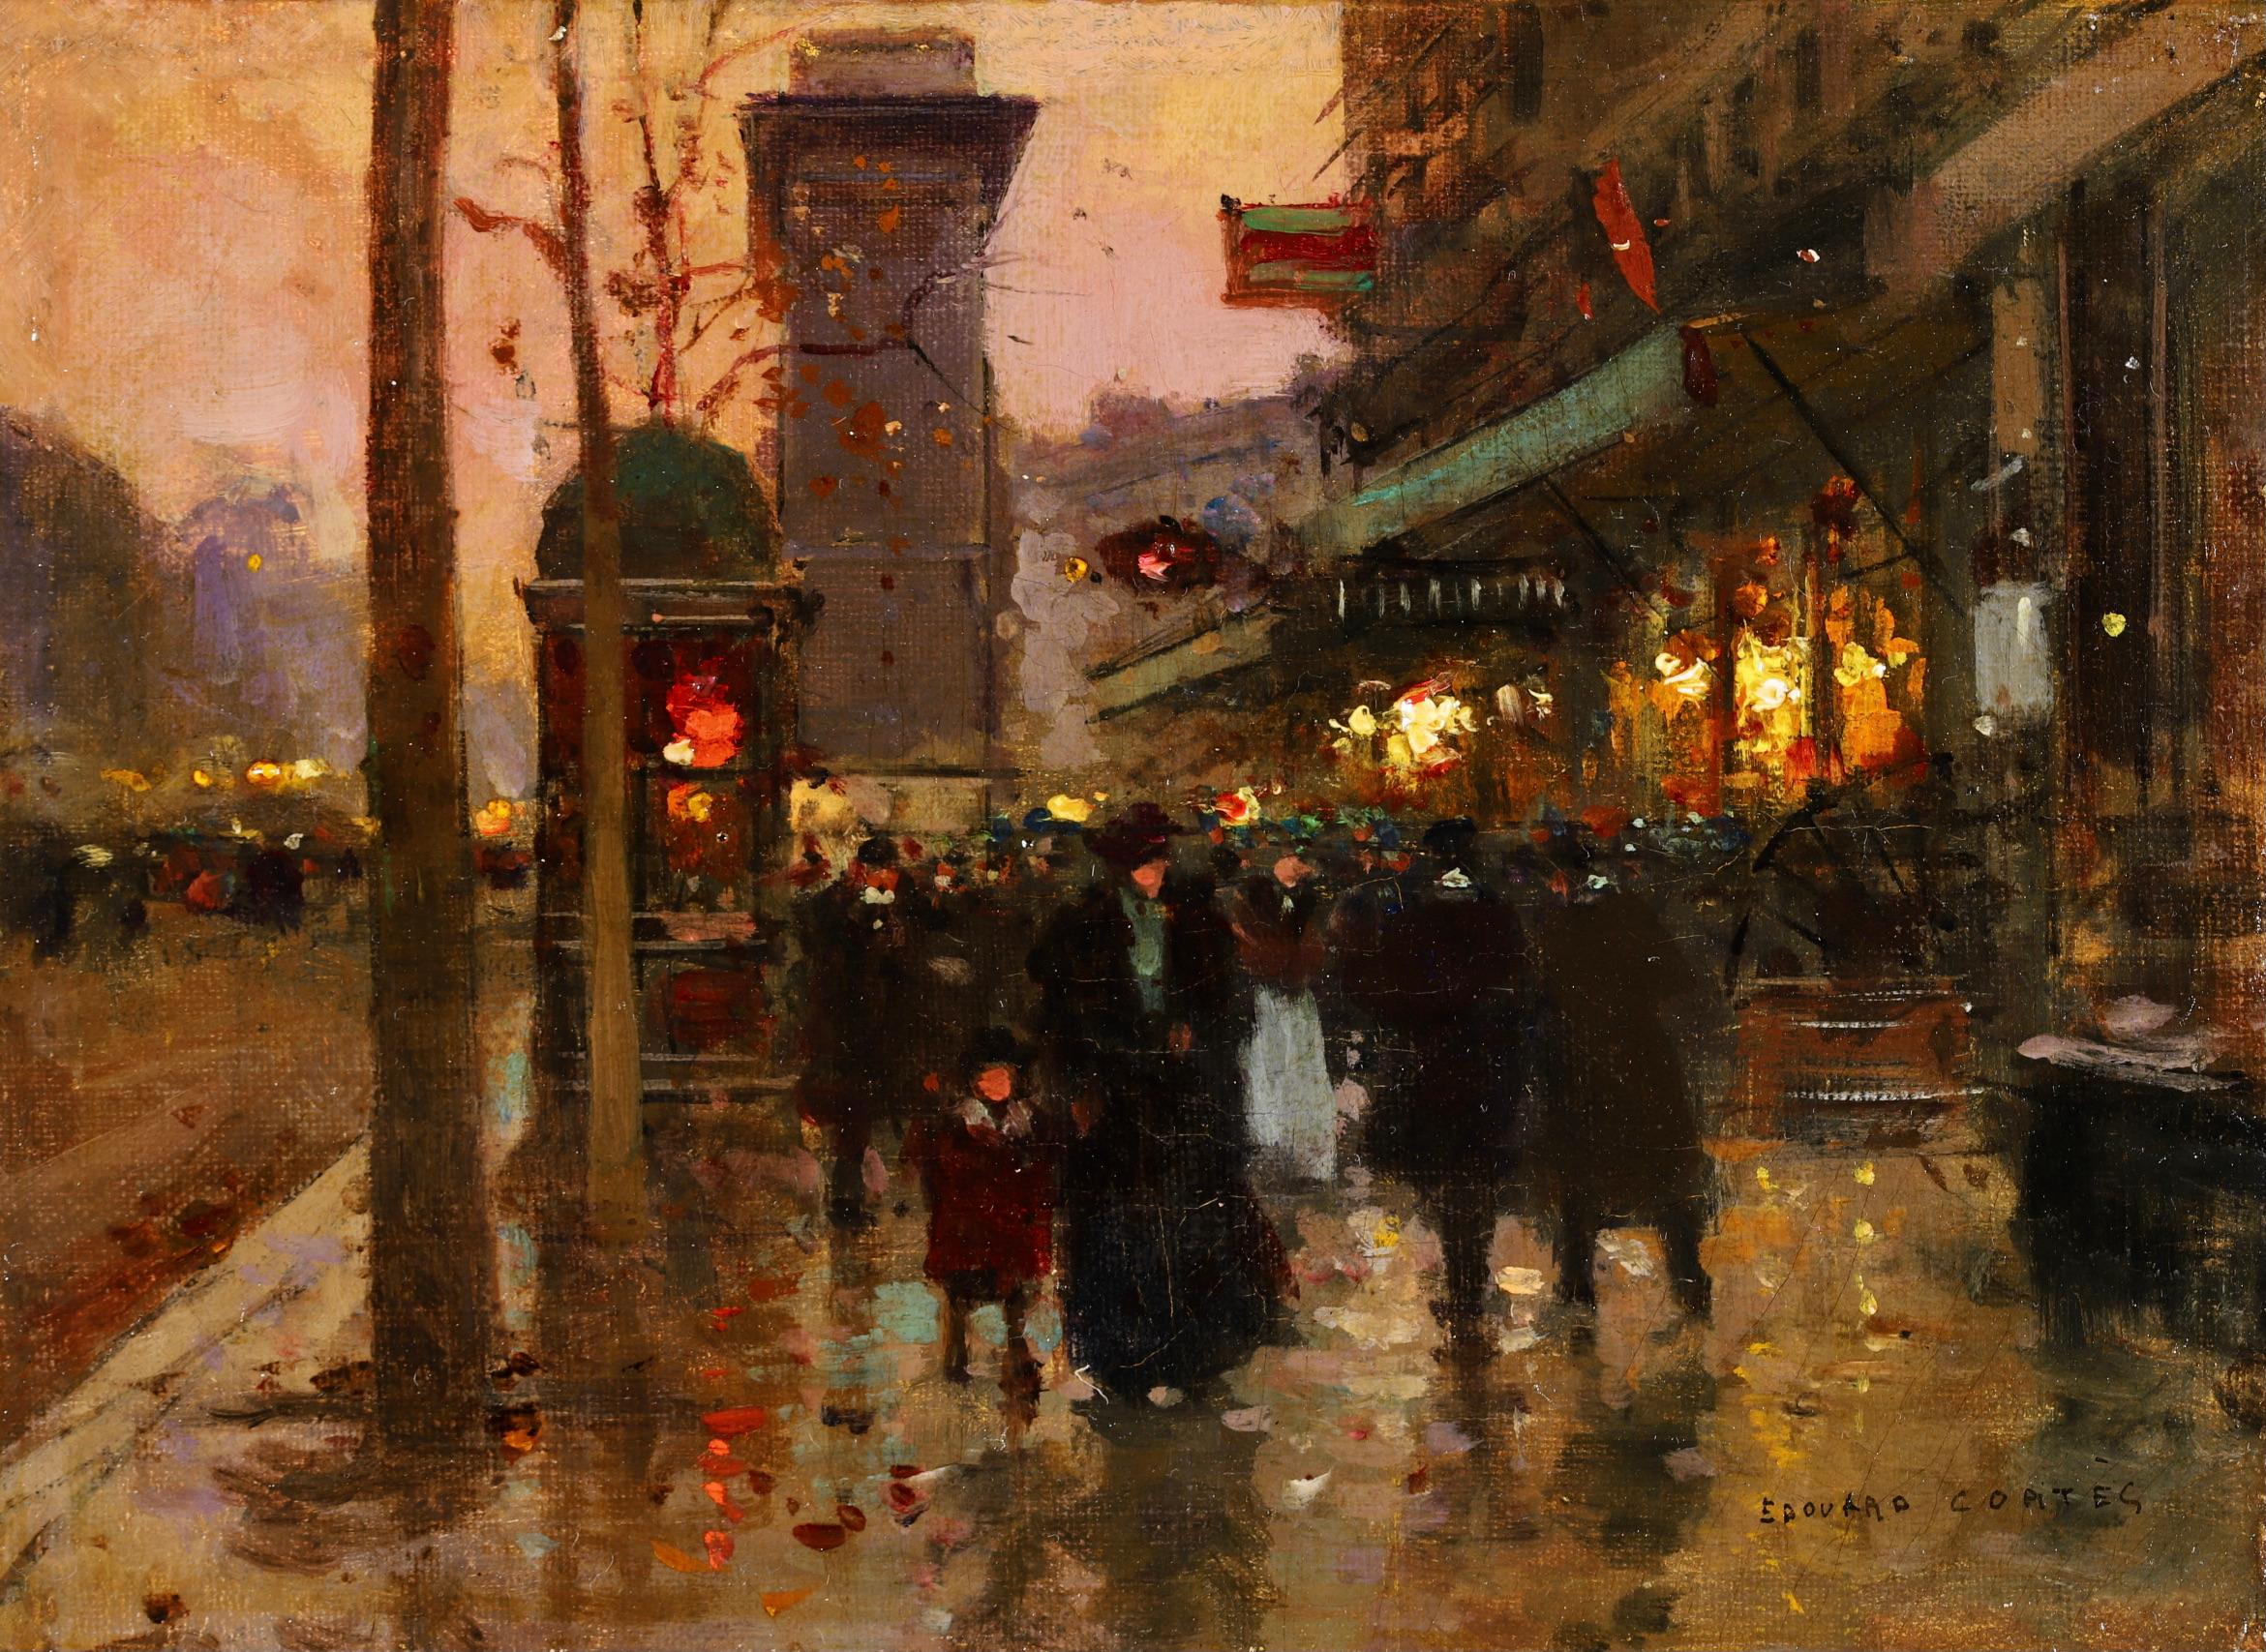  Édouard Cortès Landscape Painting - Porte Saint Denis - Le Soir - Impressionist Landscape Oil by Edouard Cortes